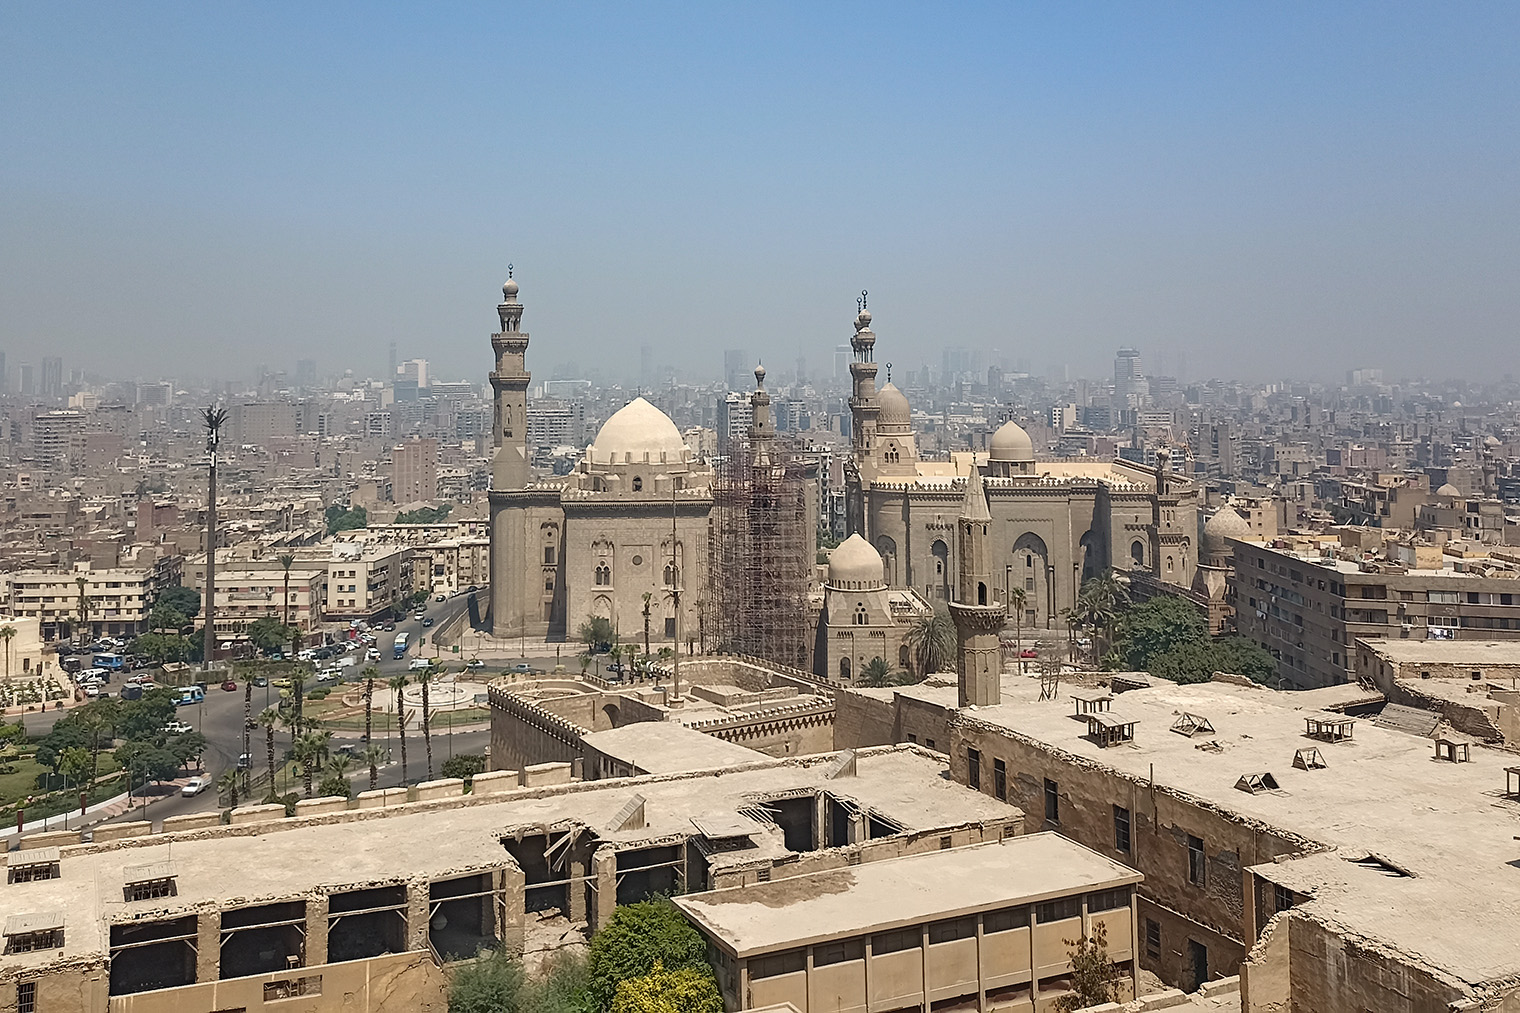 Рядом с мечетью есть обзорные террасы. С них хорошо видно центральный Каир — нагромождение серых высоток и исполинских мечетей